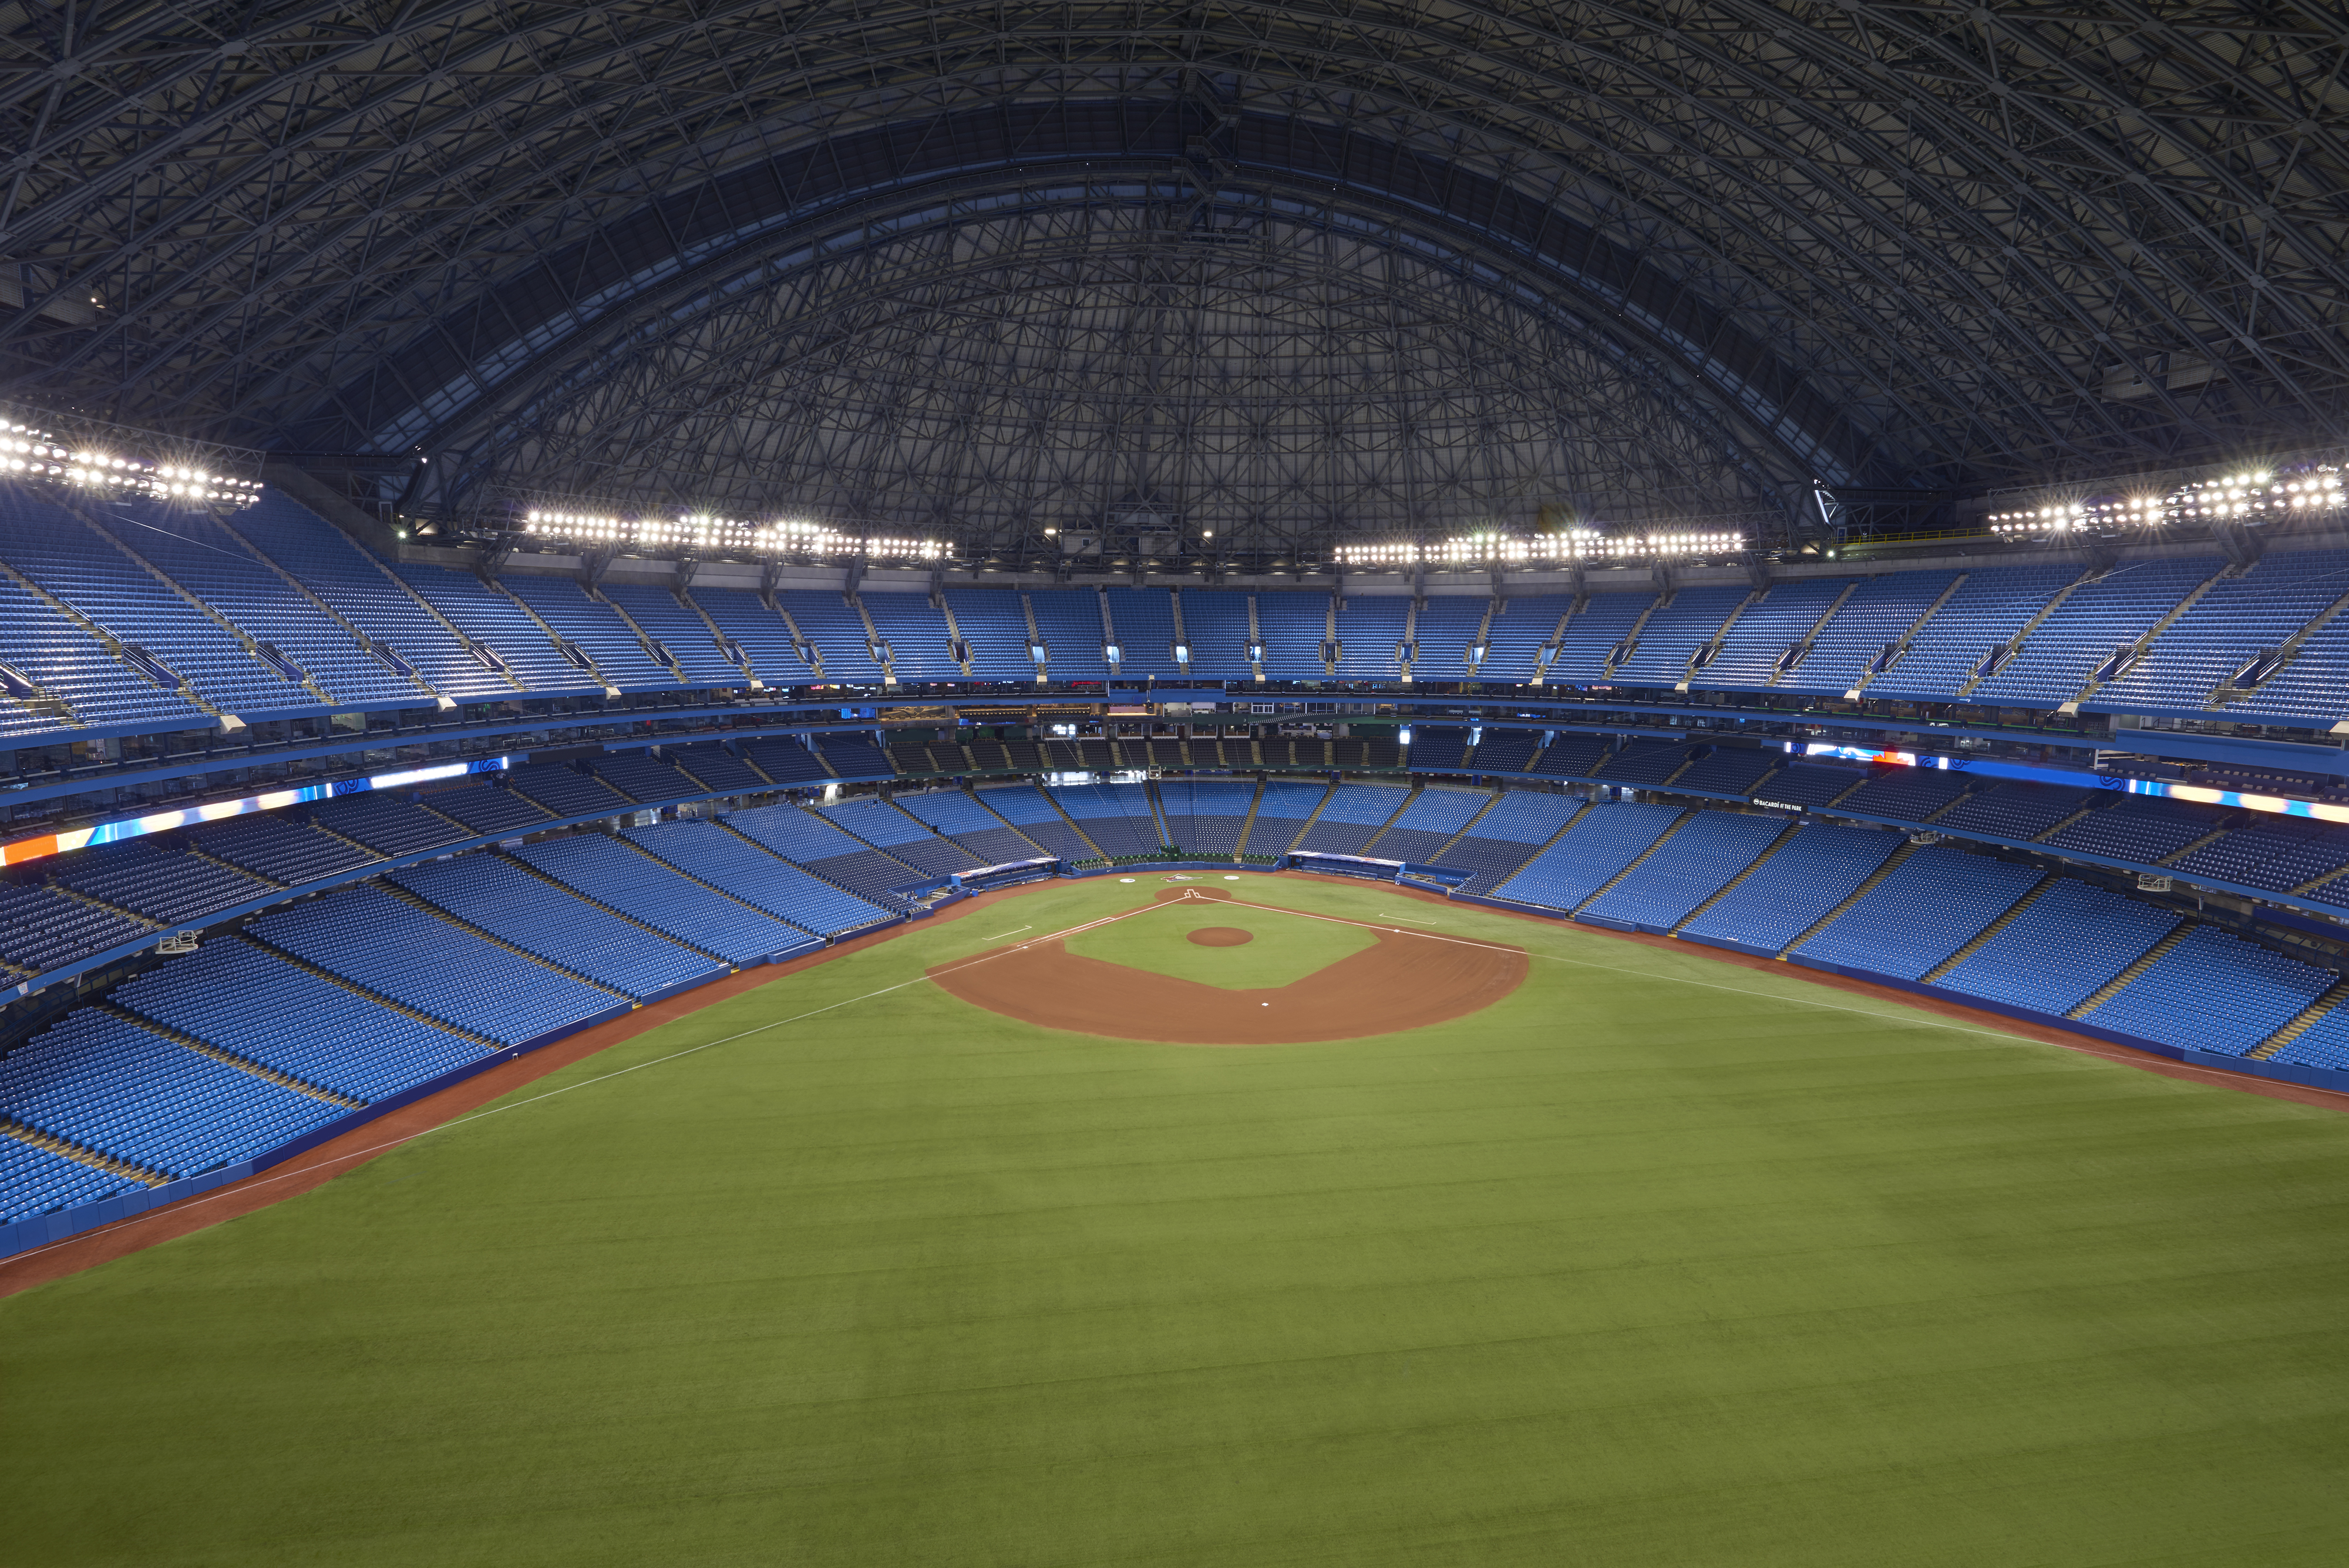 Views of baseball games at Rogers Centre